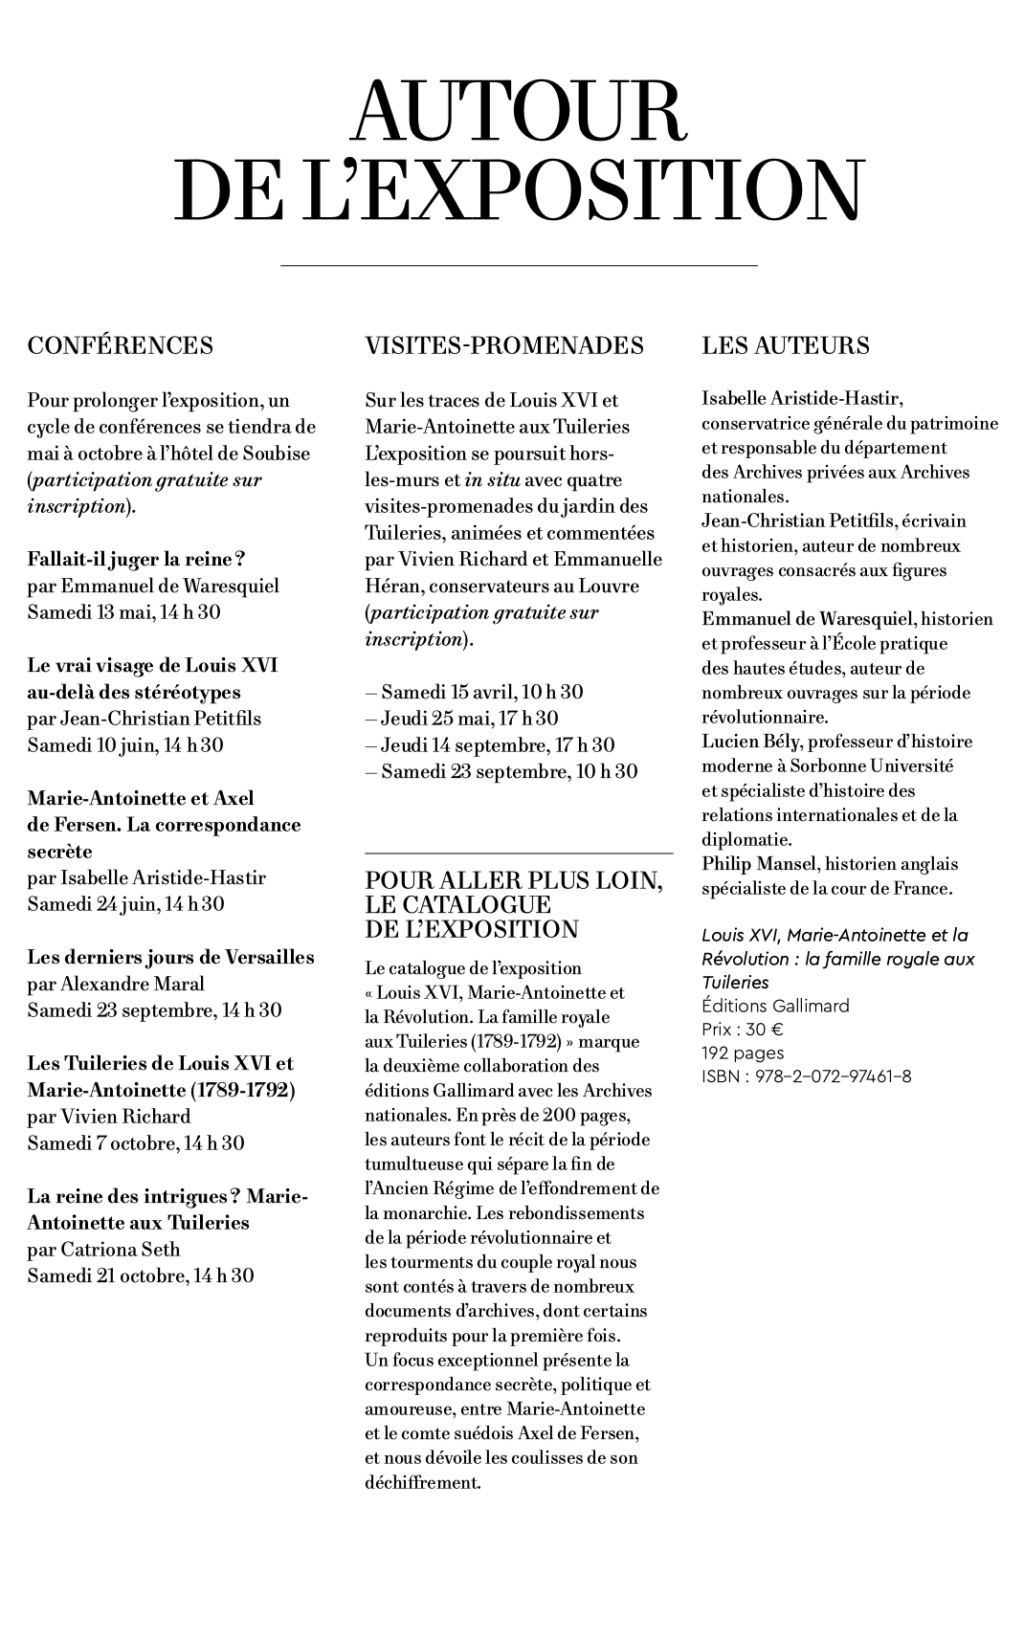 Exposition aux Archives nationales : Louis XVI, Marie-Antoinette et la Révolution, la famille royale aux Tuileries  Capt4829